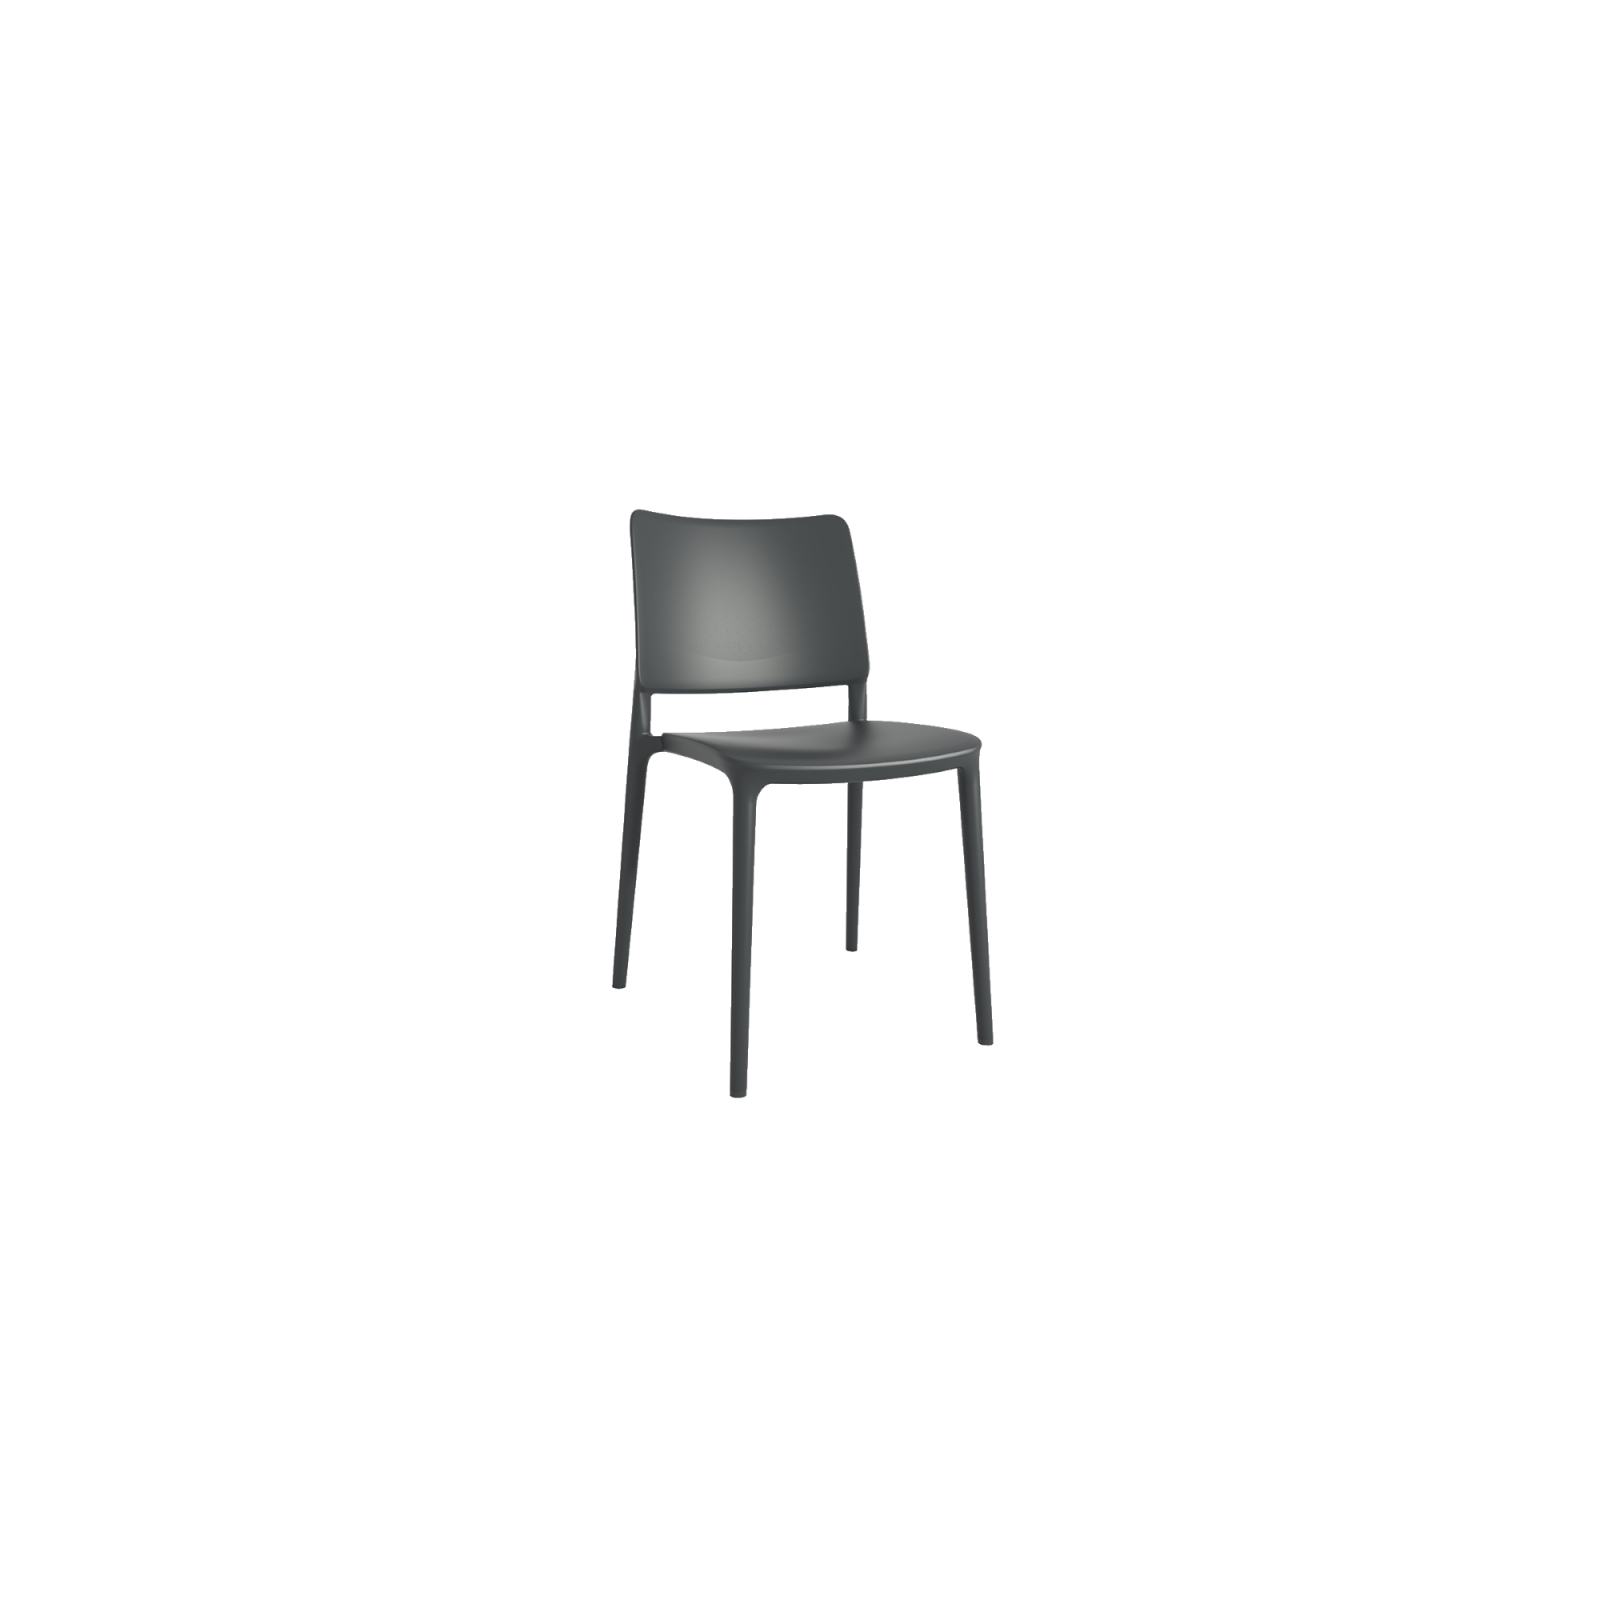 Кухонный стул PAPATYA Joy-S белый 01 (4781)